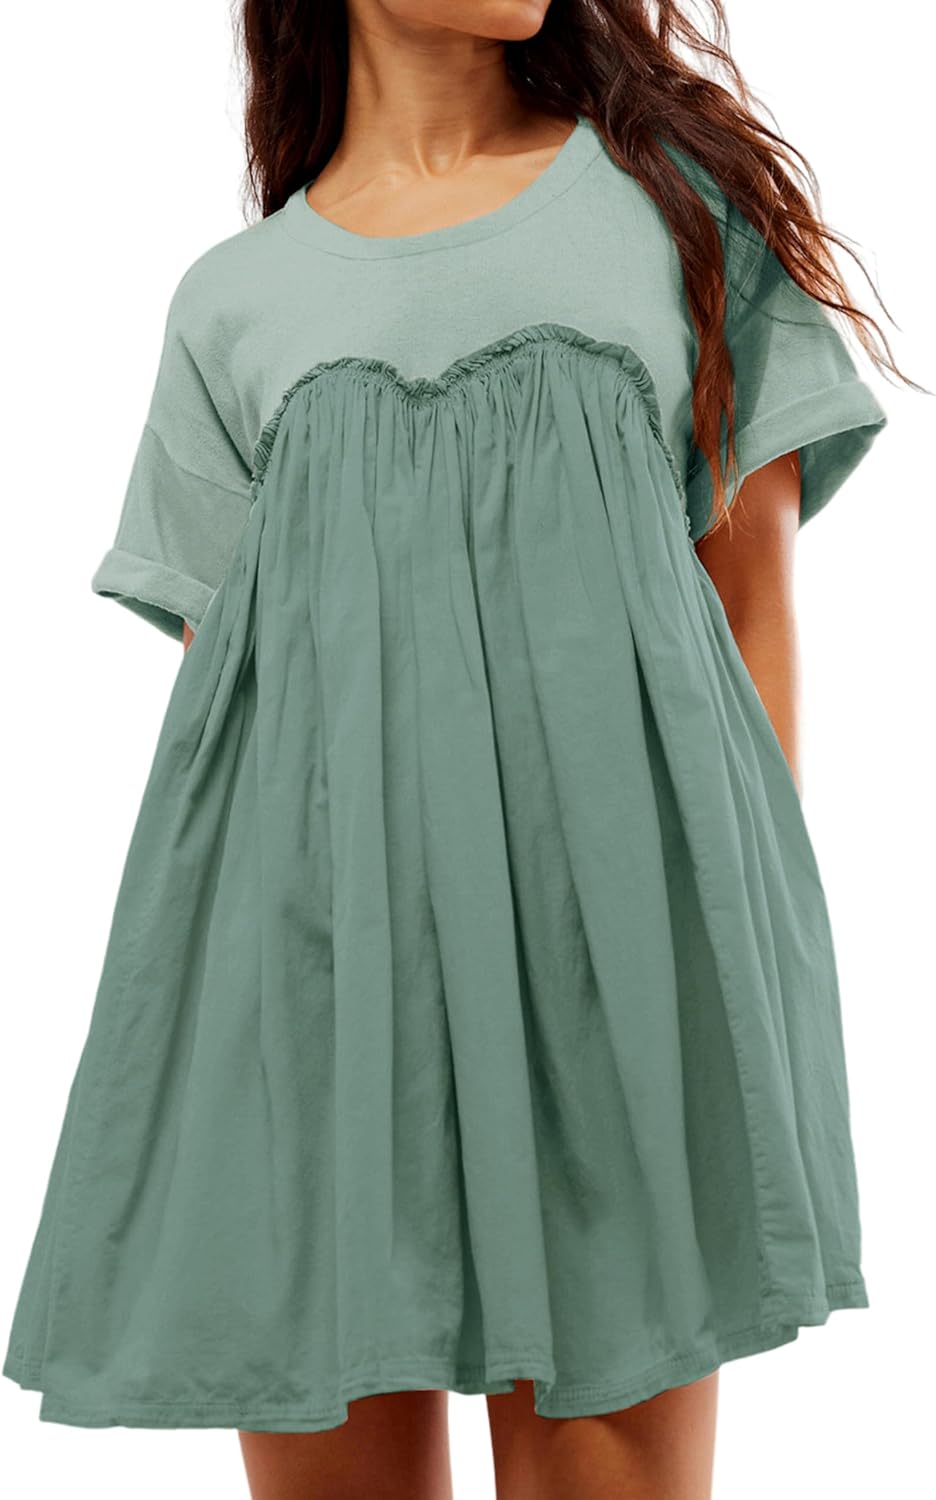 Women’s Casual Summer Dress (Buy 2 Free Shipping)